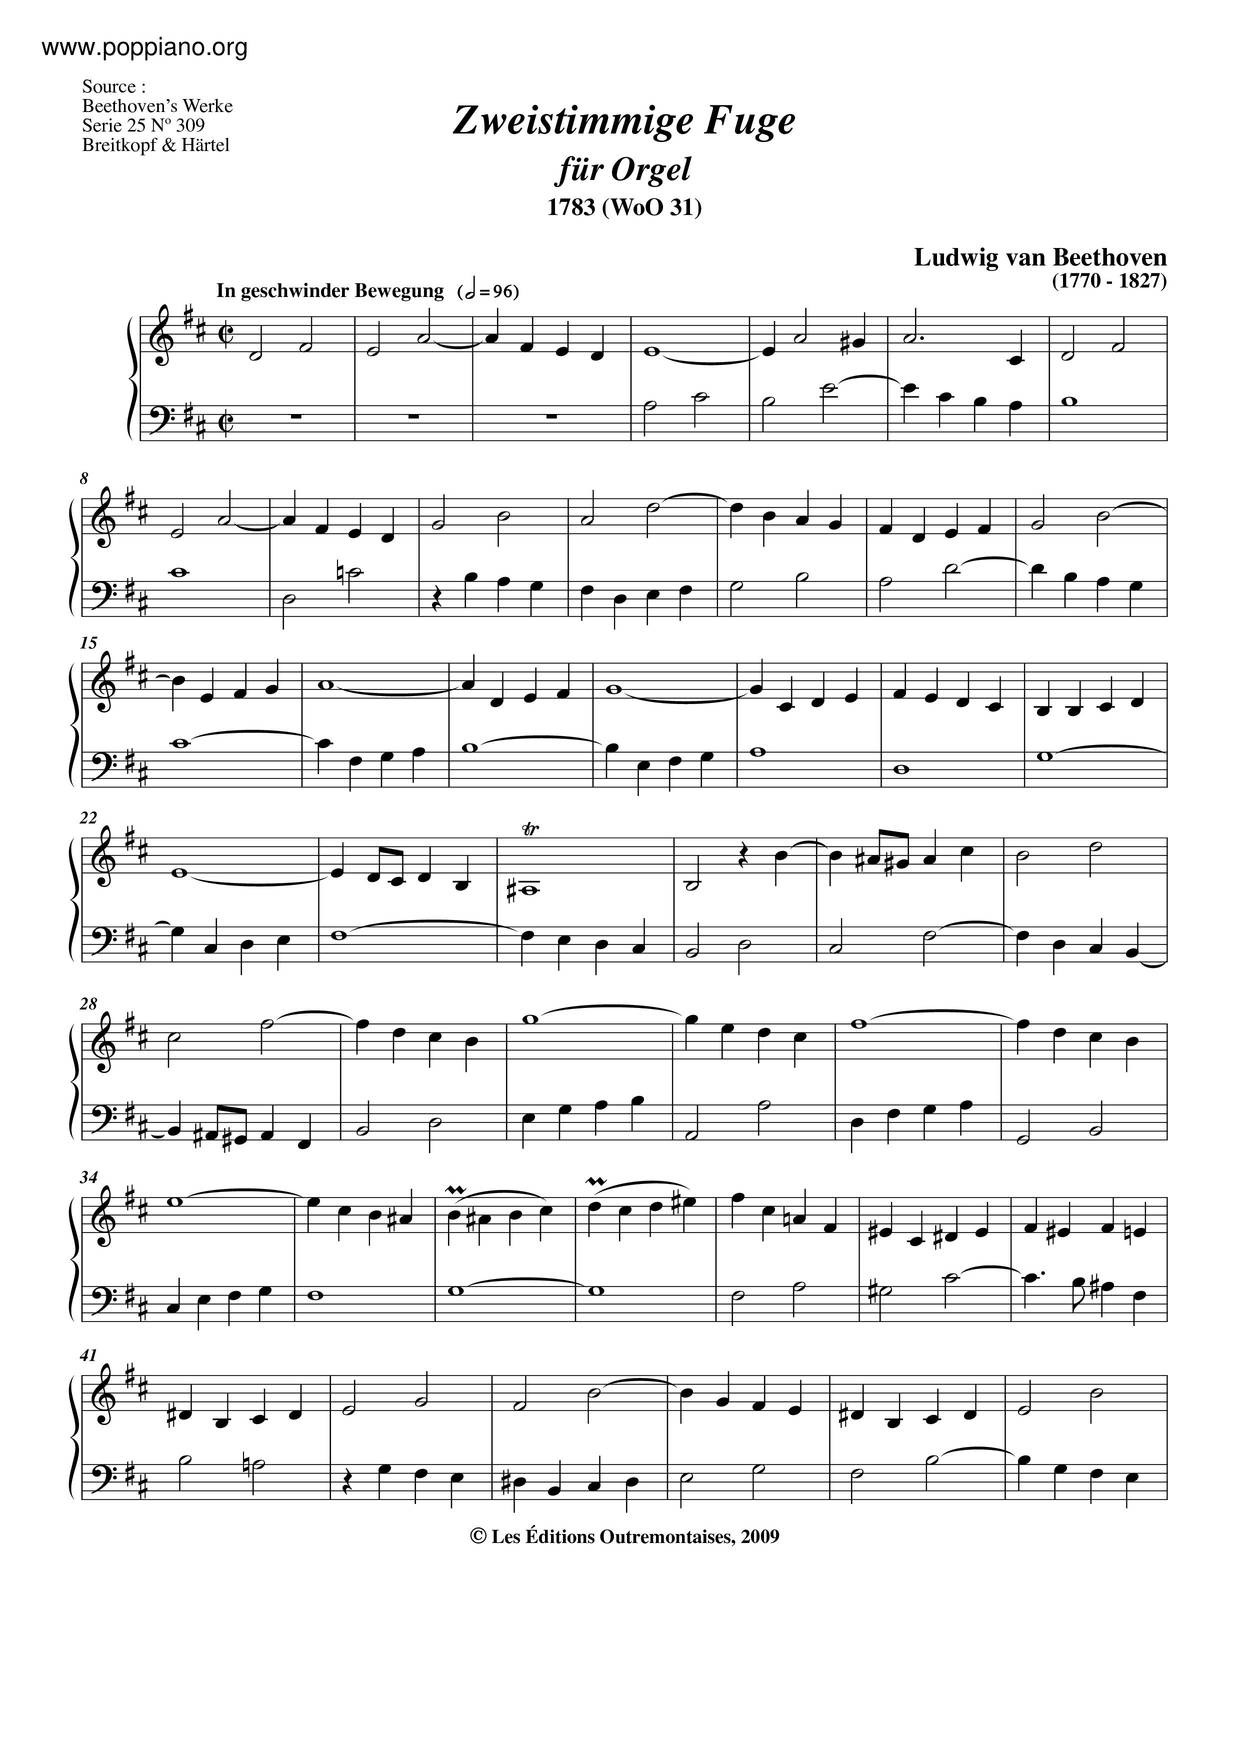 Fugue For Organ, WoO 31 Score